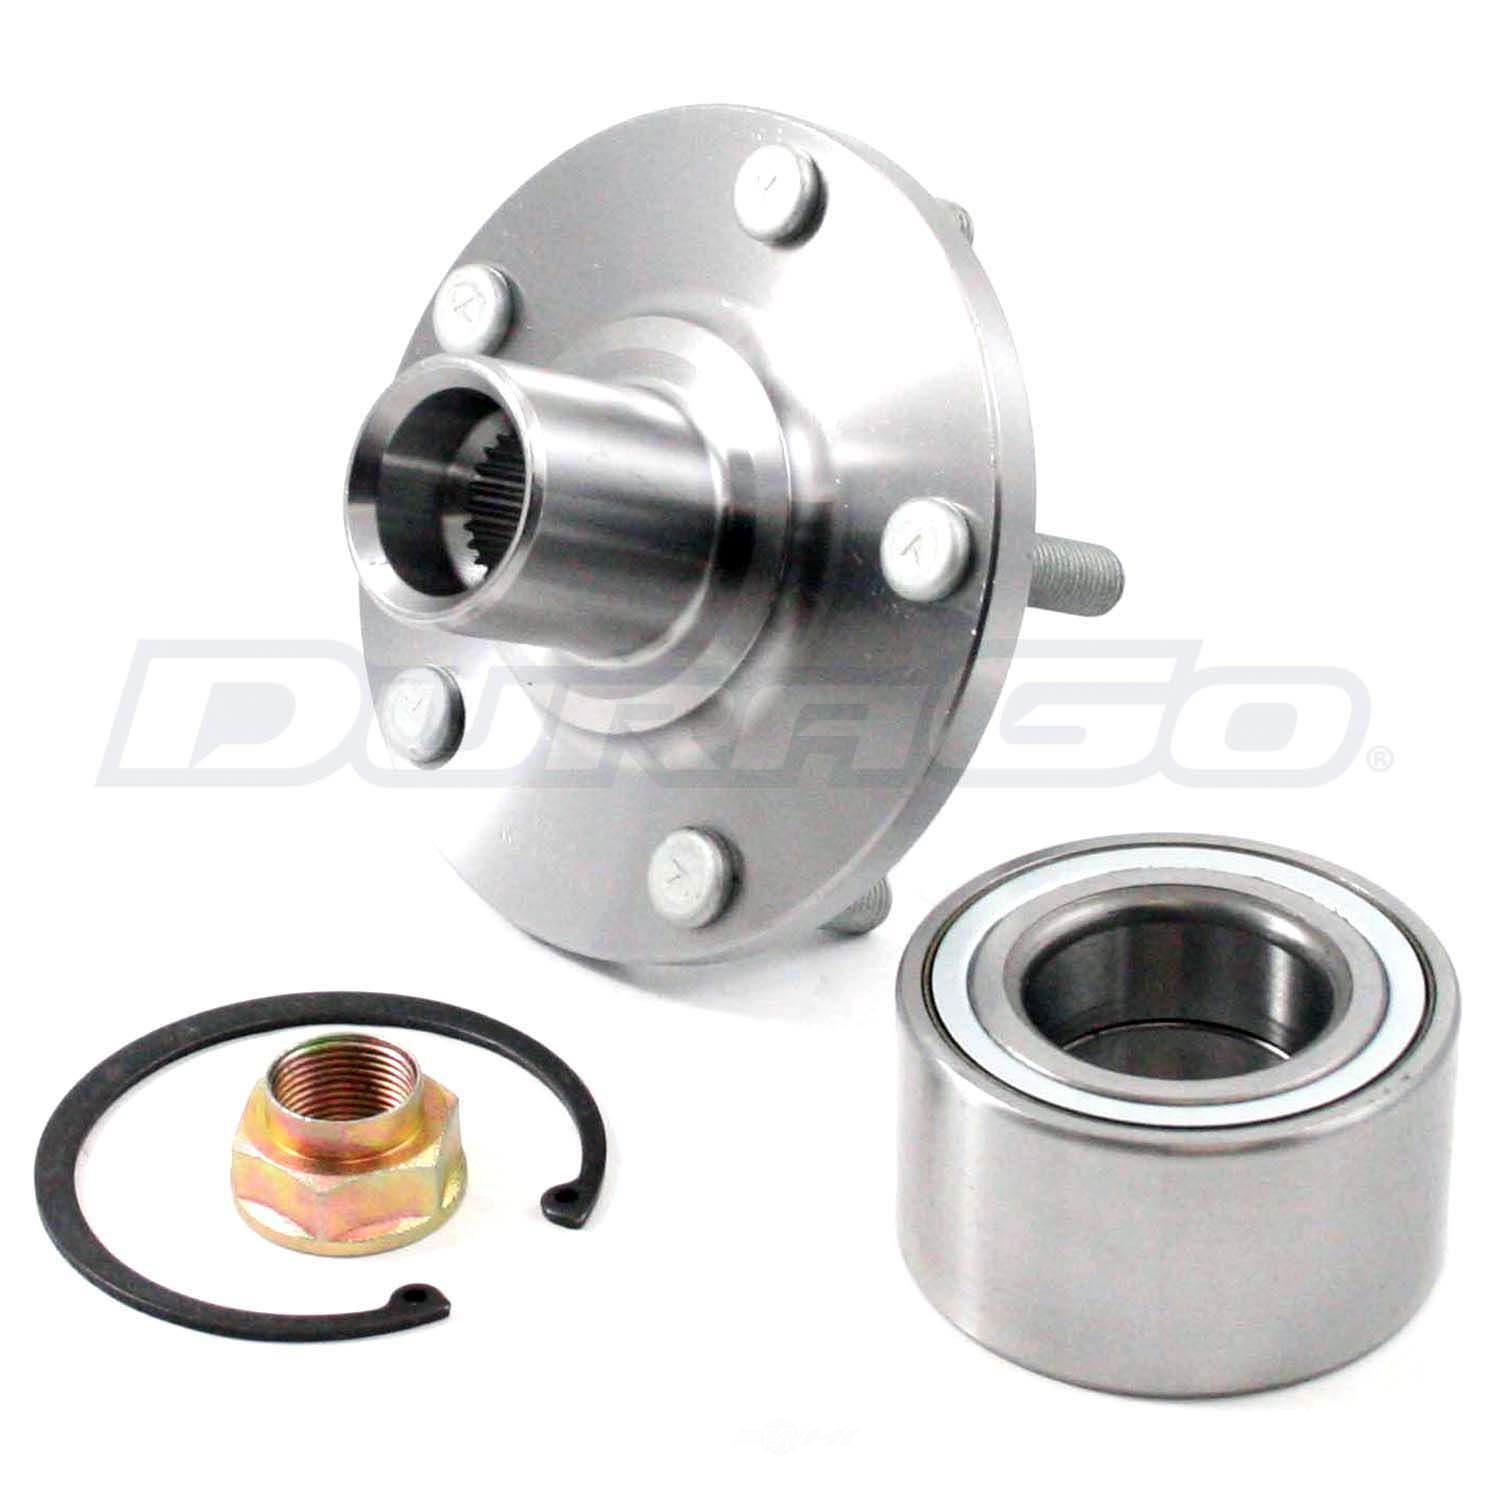 DURAGO - Wheel Hub Repair Kit - D48 295-18508